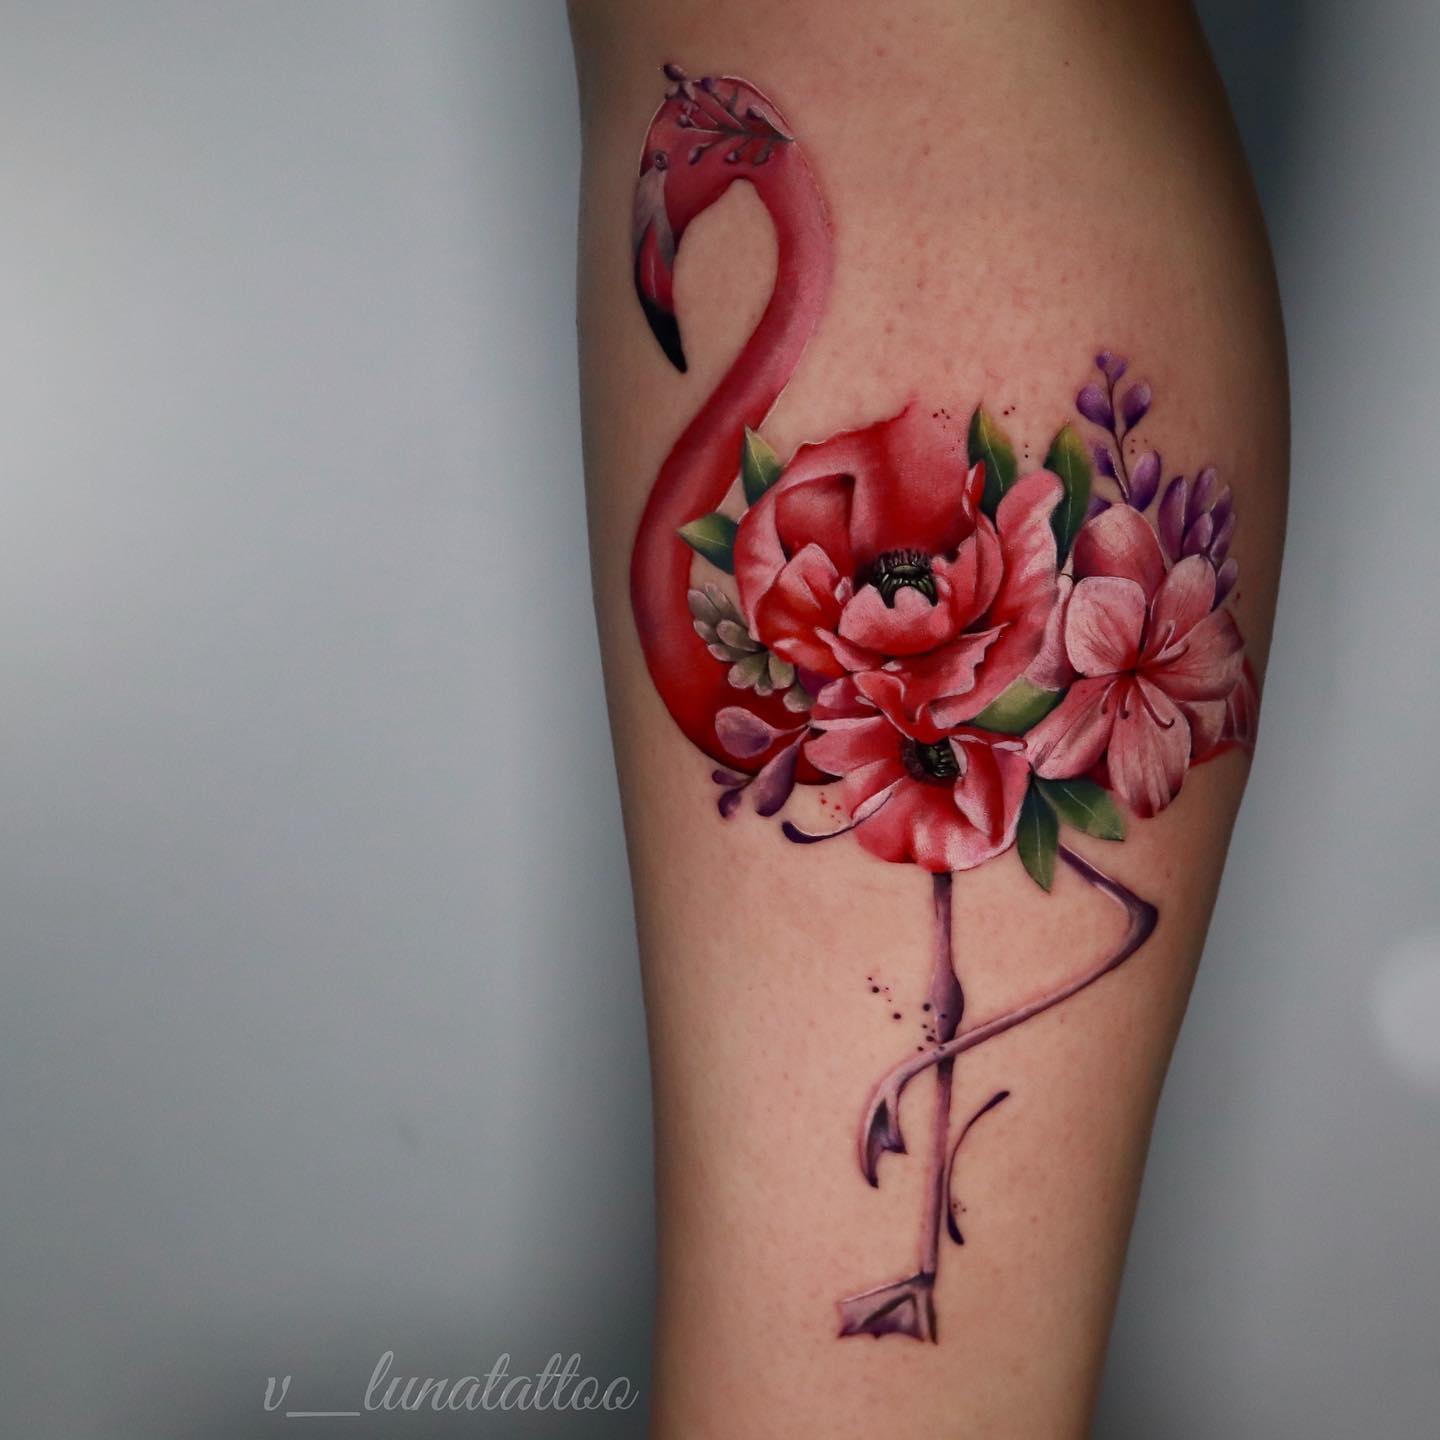 Floral flamigo tattoos by v lunatattoo